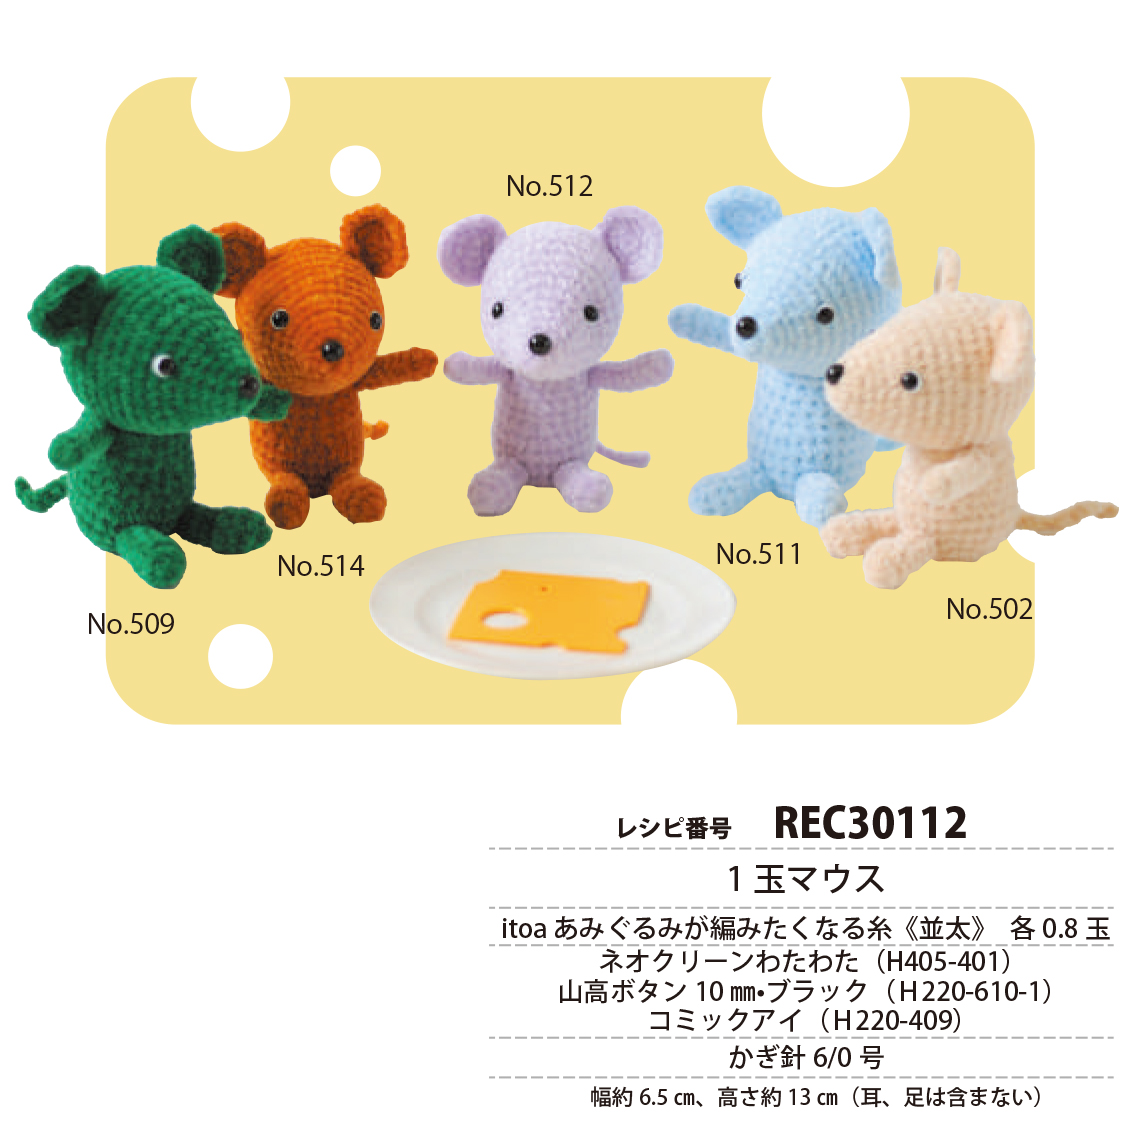 【夏の感謝祭】REC30112 1玉マウス レシピ (枚)